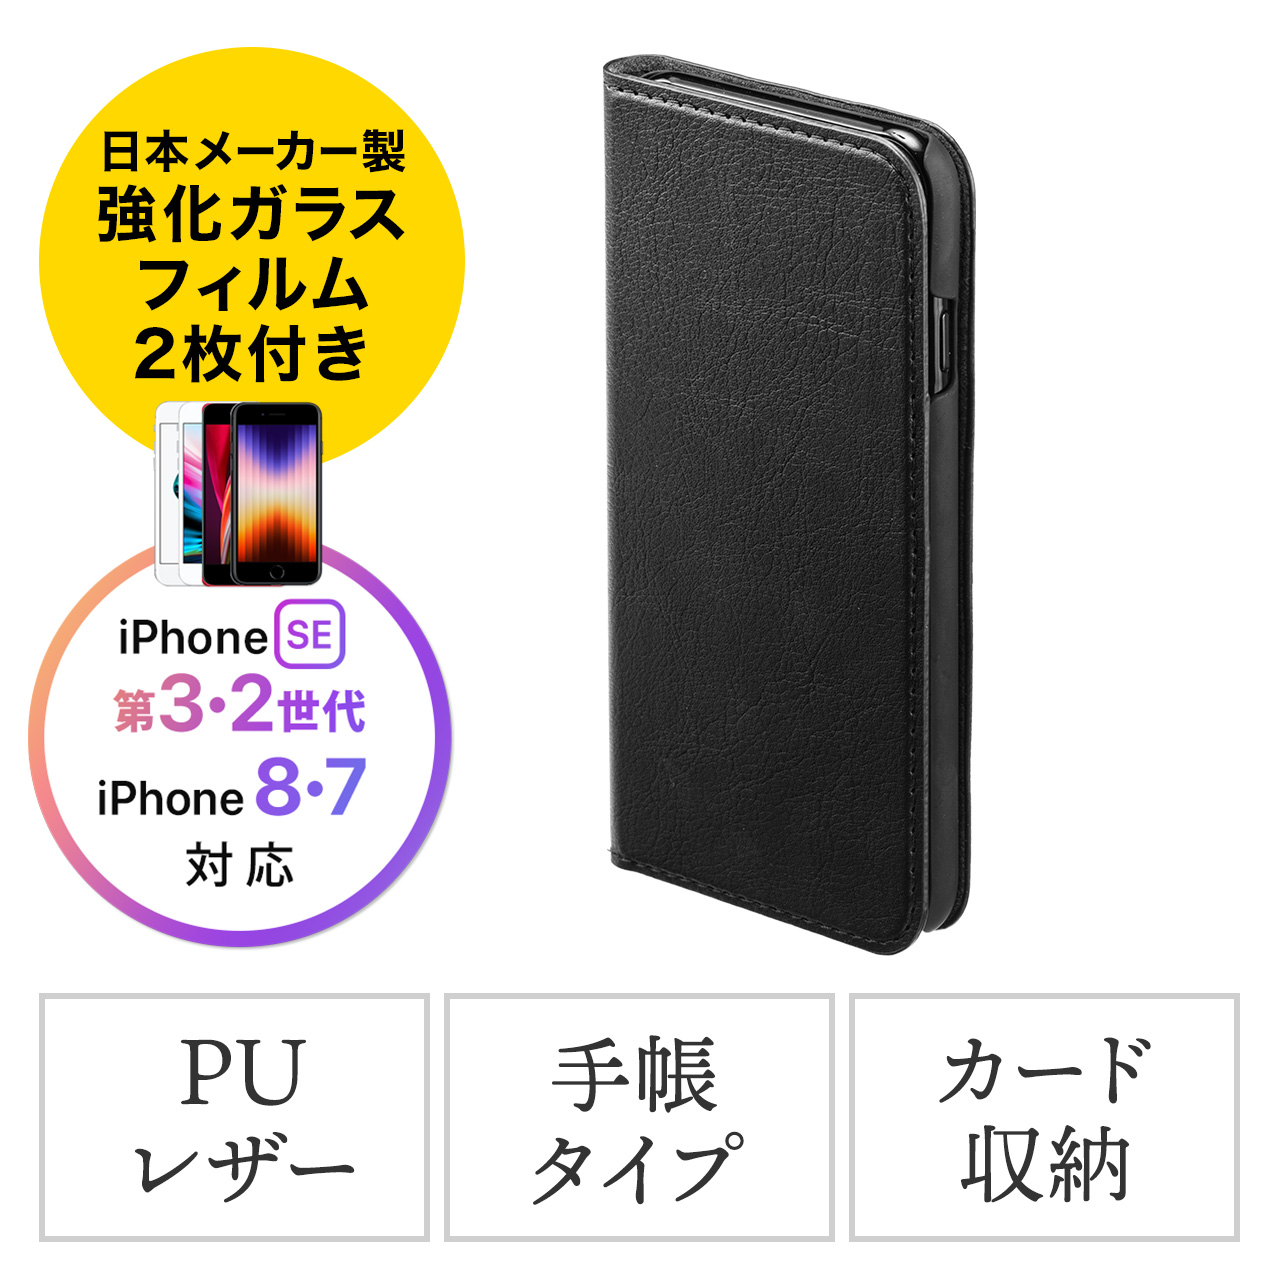 【新品未使用】iPhone XR 64GB 黒 ガラスフィルム装着済＆ケース付